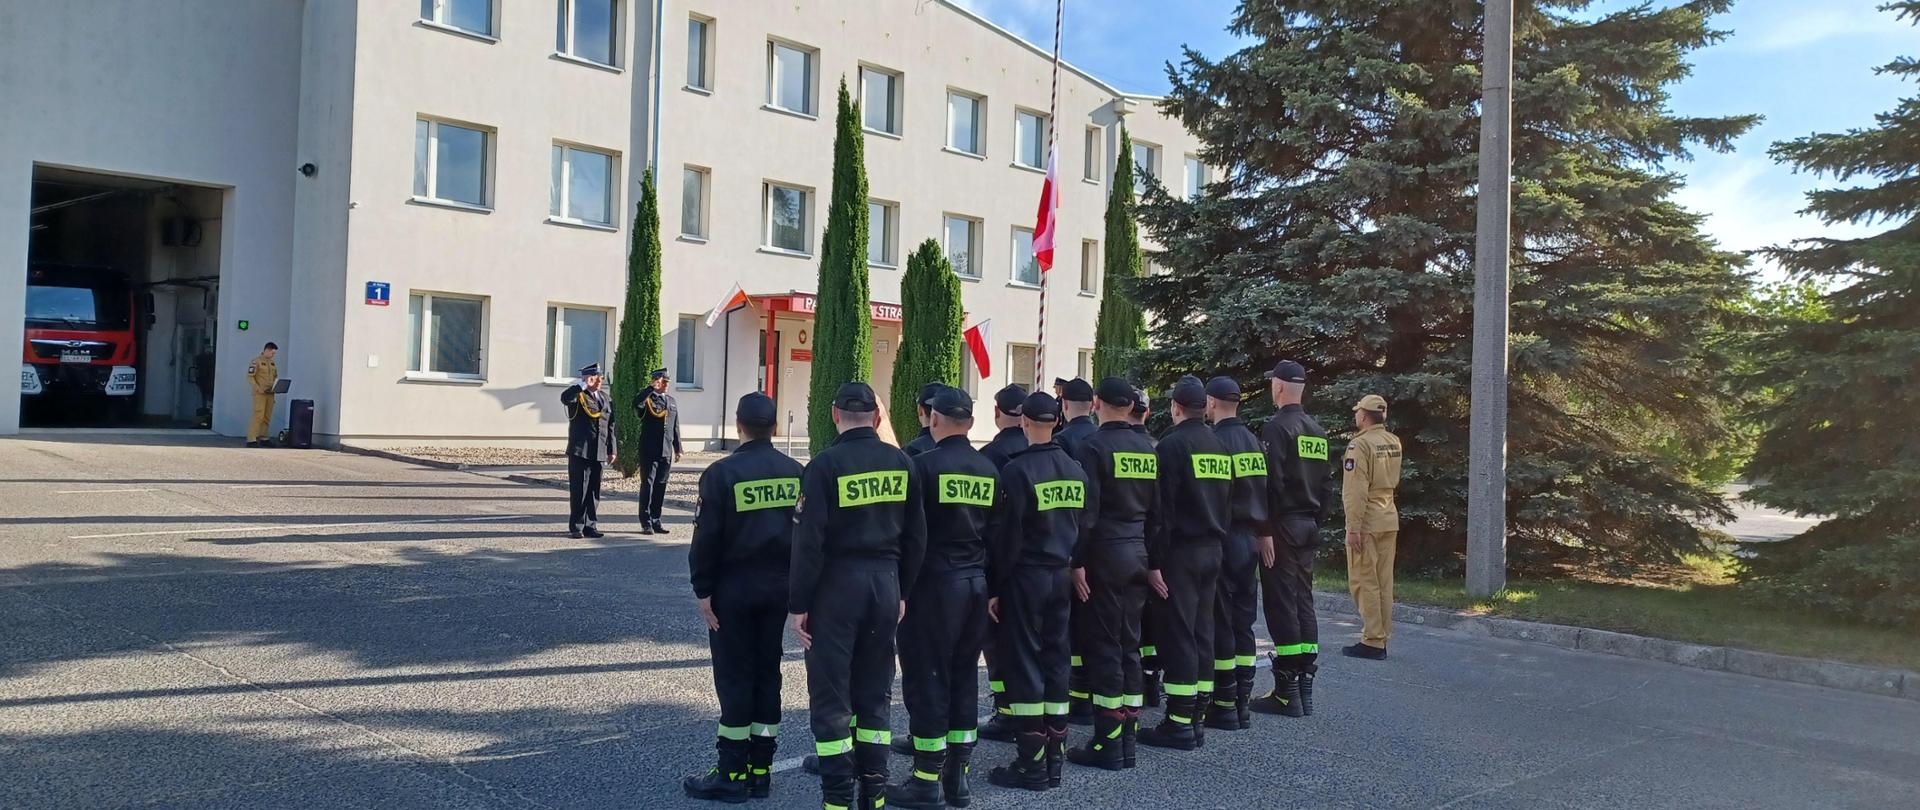 Pododdział strażaków w umundurowaniu koszarowym, dowódca i dwóch komendantów zalutują w stronę podnoszonej na maszcie biało czerwonej flagi. W tle budynek Komendy Powiatowej PSP w Opocznie. 